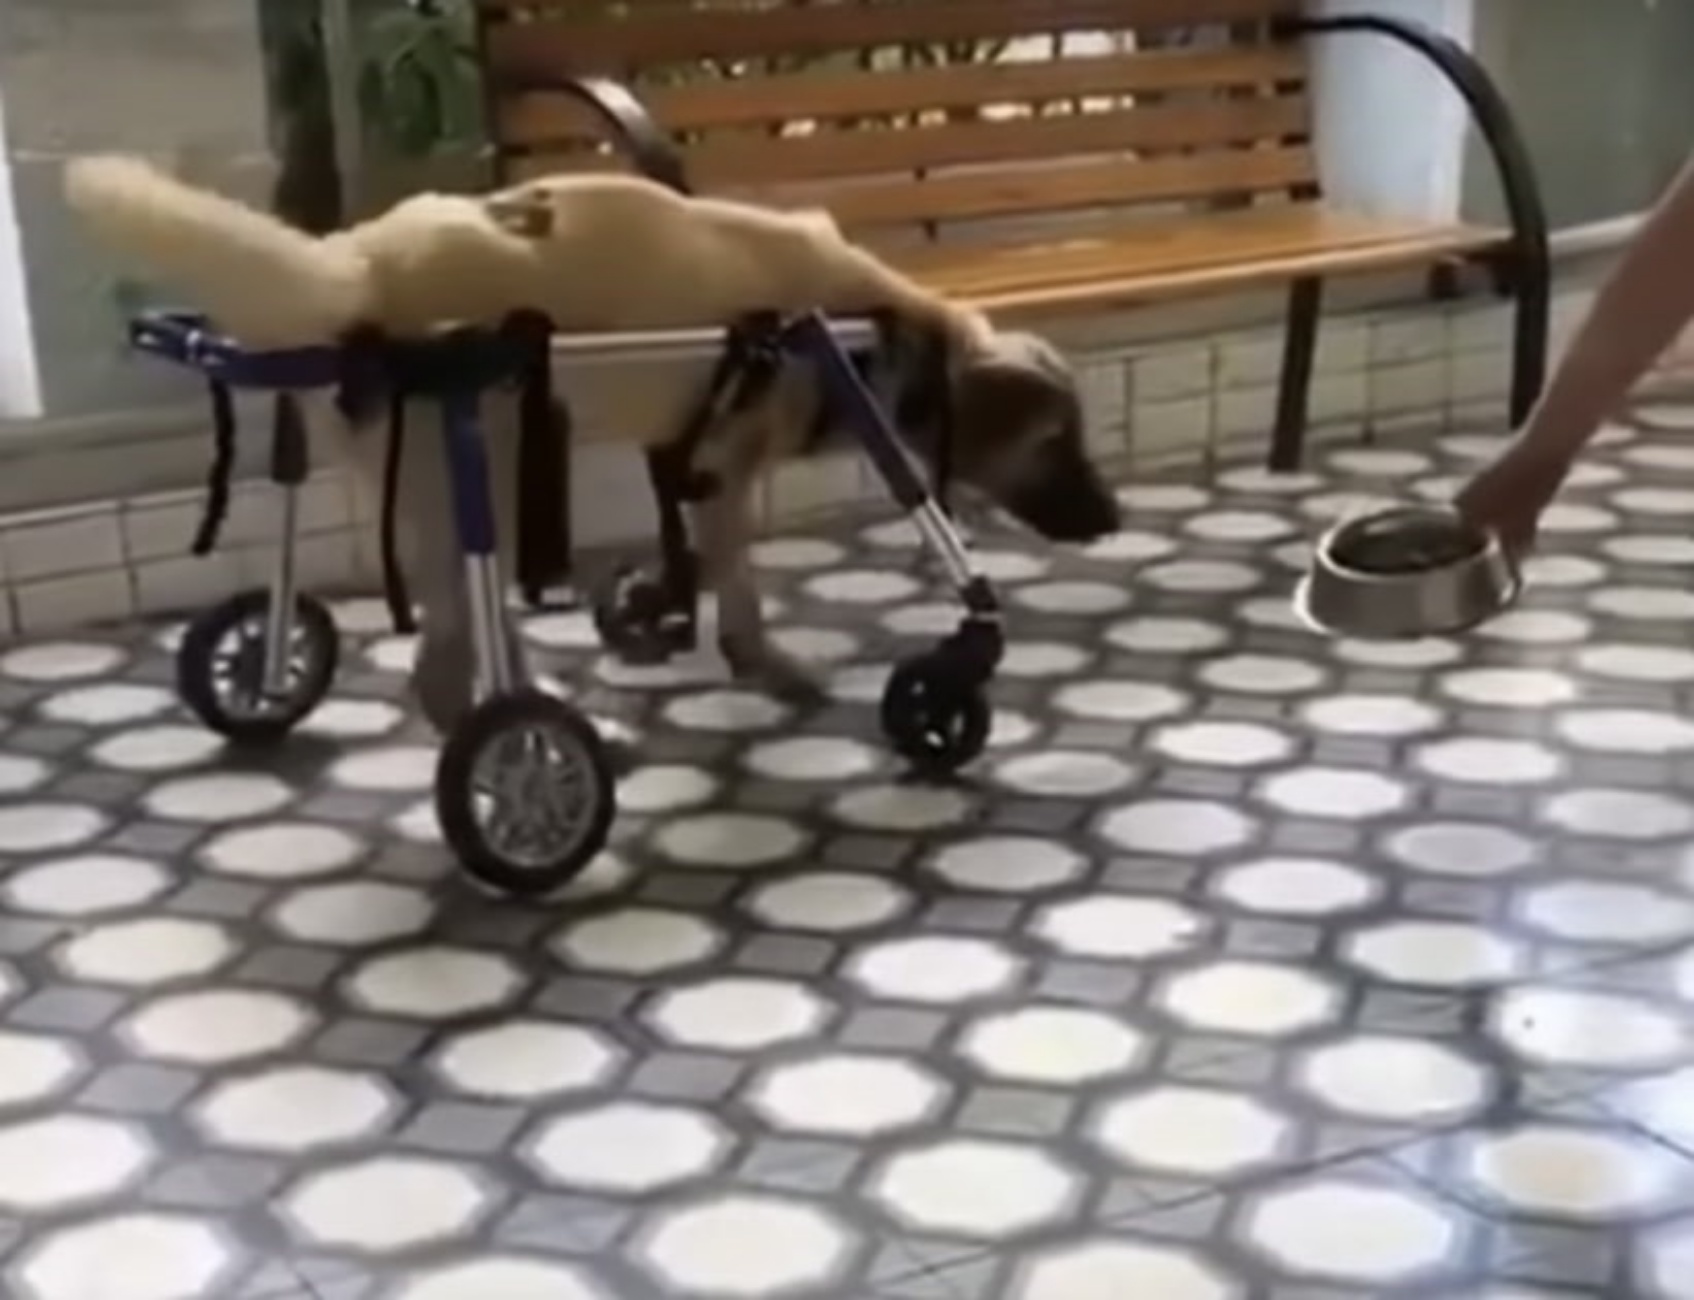 cane con sedia a rotelle